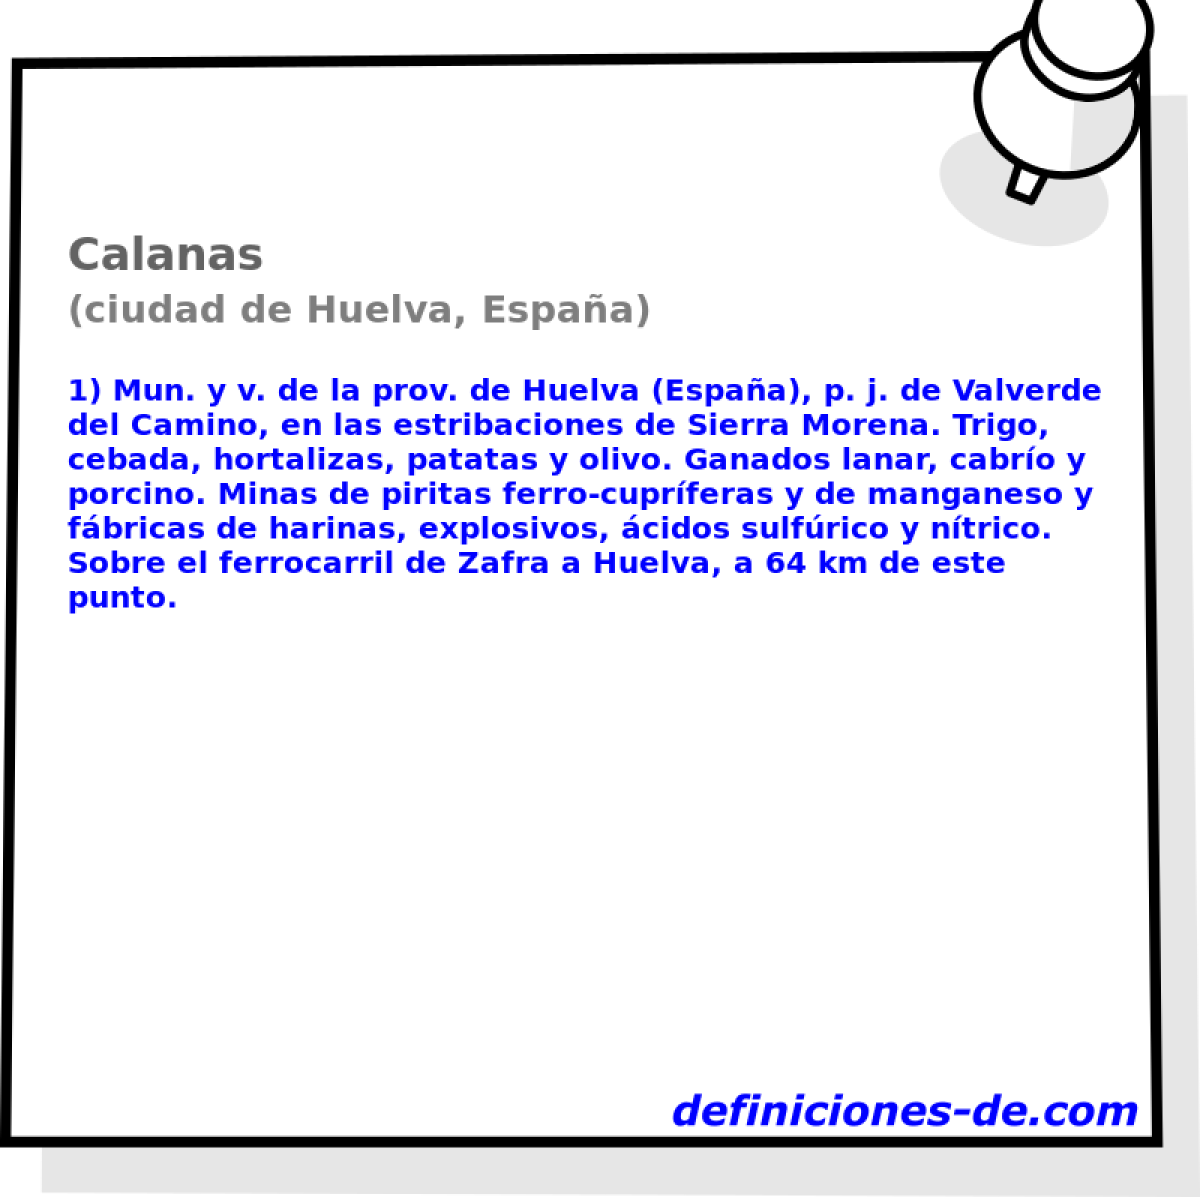 Calanas (ciudad de Huelva, Espaa)